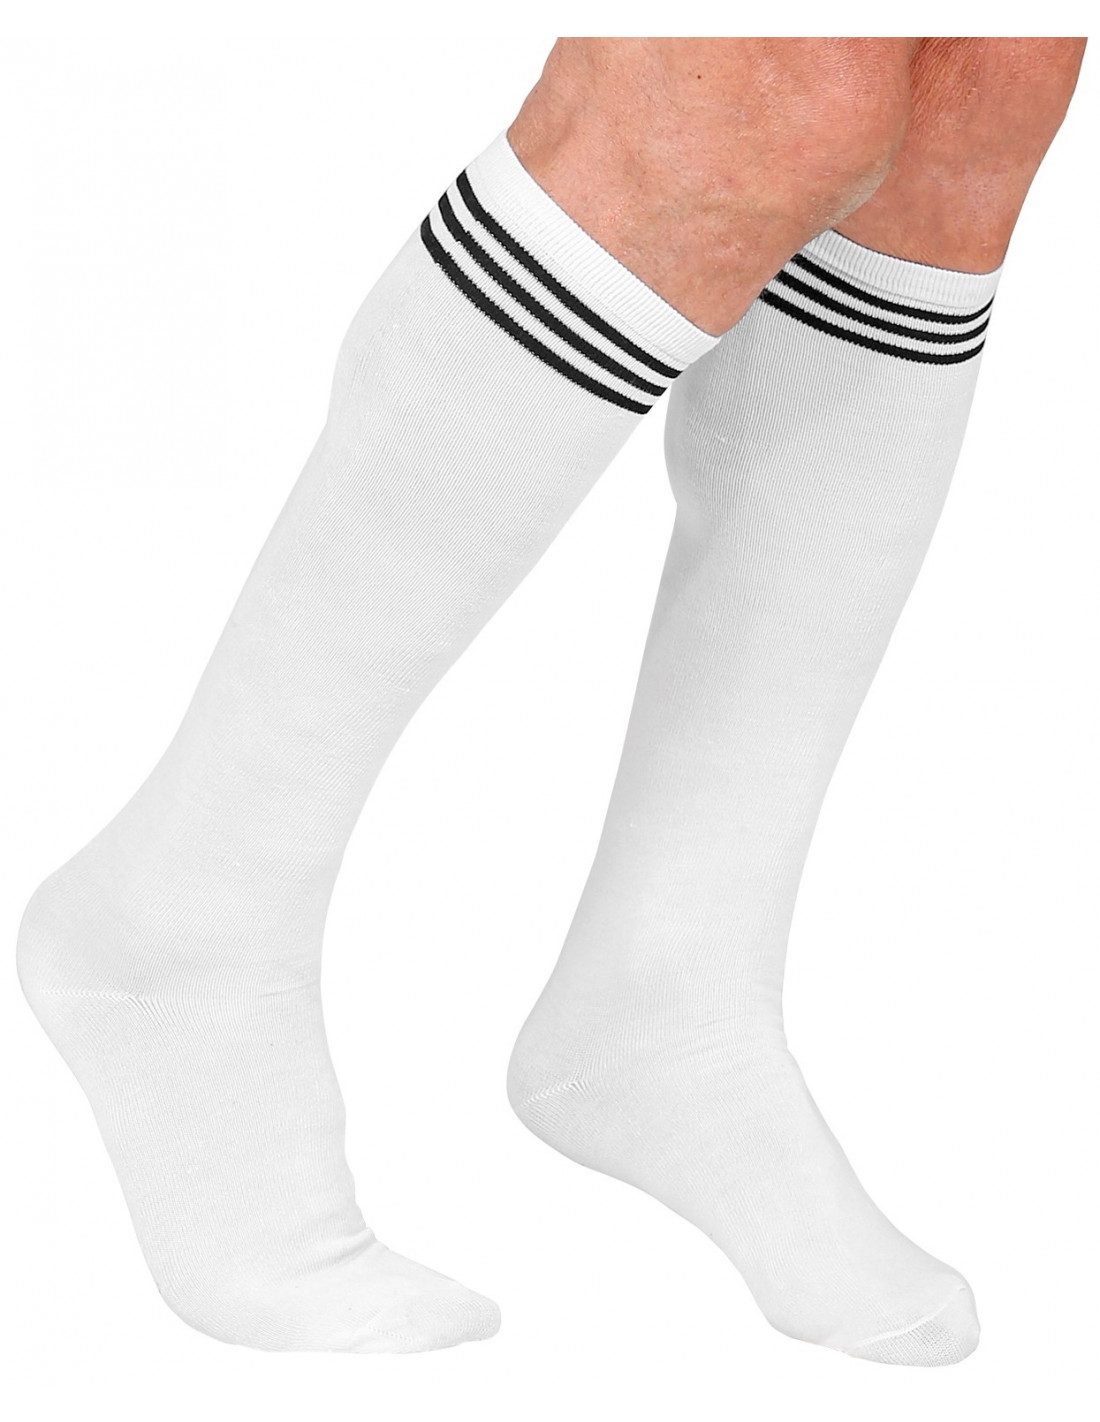 Alerta microtendencia: el street style lleva los calcetines blancos  deportivos hasta arriba y quedan así de bien